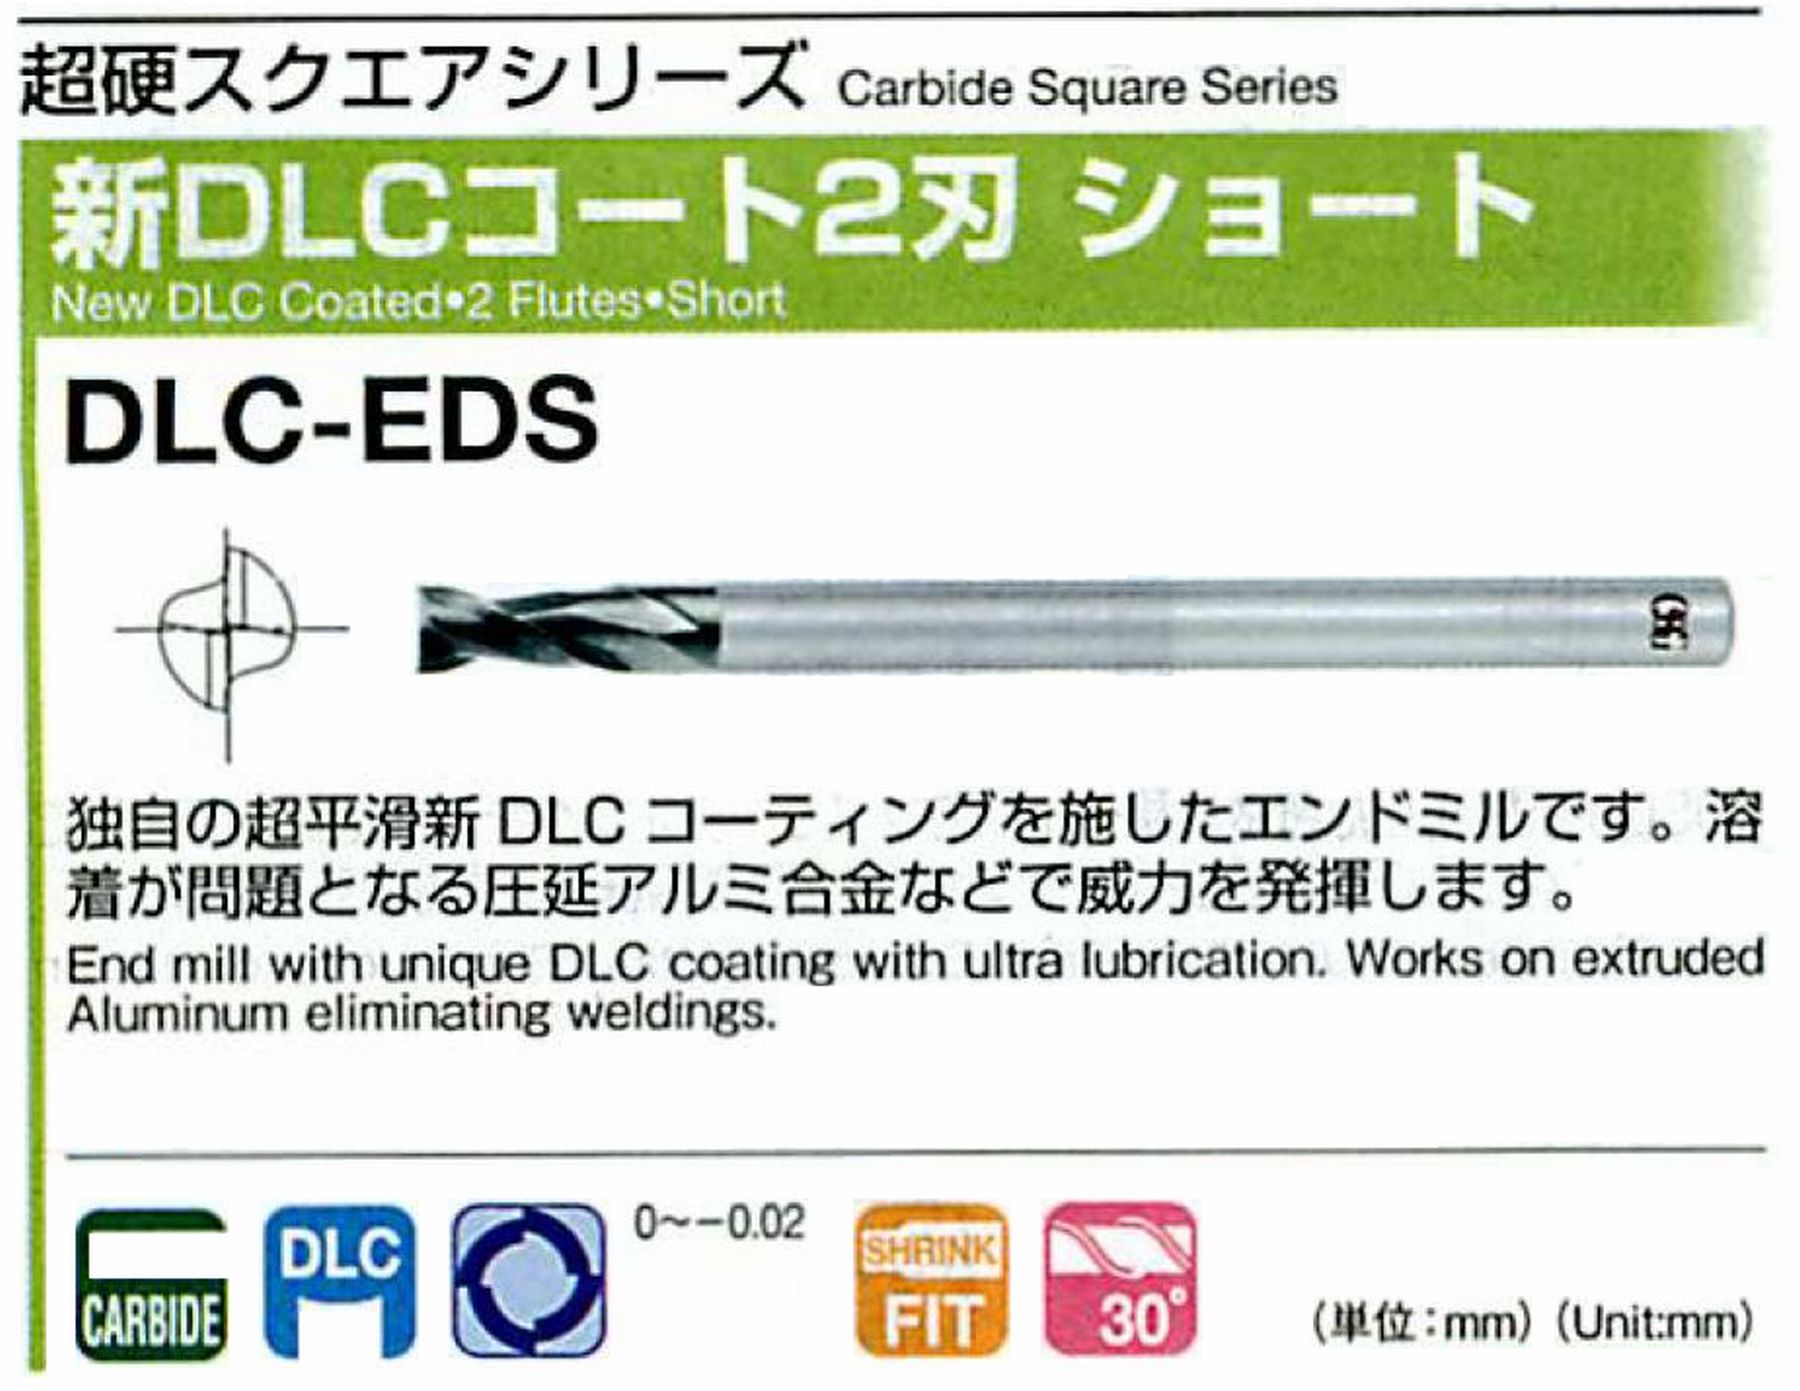 オーエスジー/OSG 新DLCコート 2刃ショート DLC-EDS 外径2.5 全長40 刃長5 シャンク径4mm